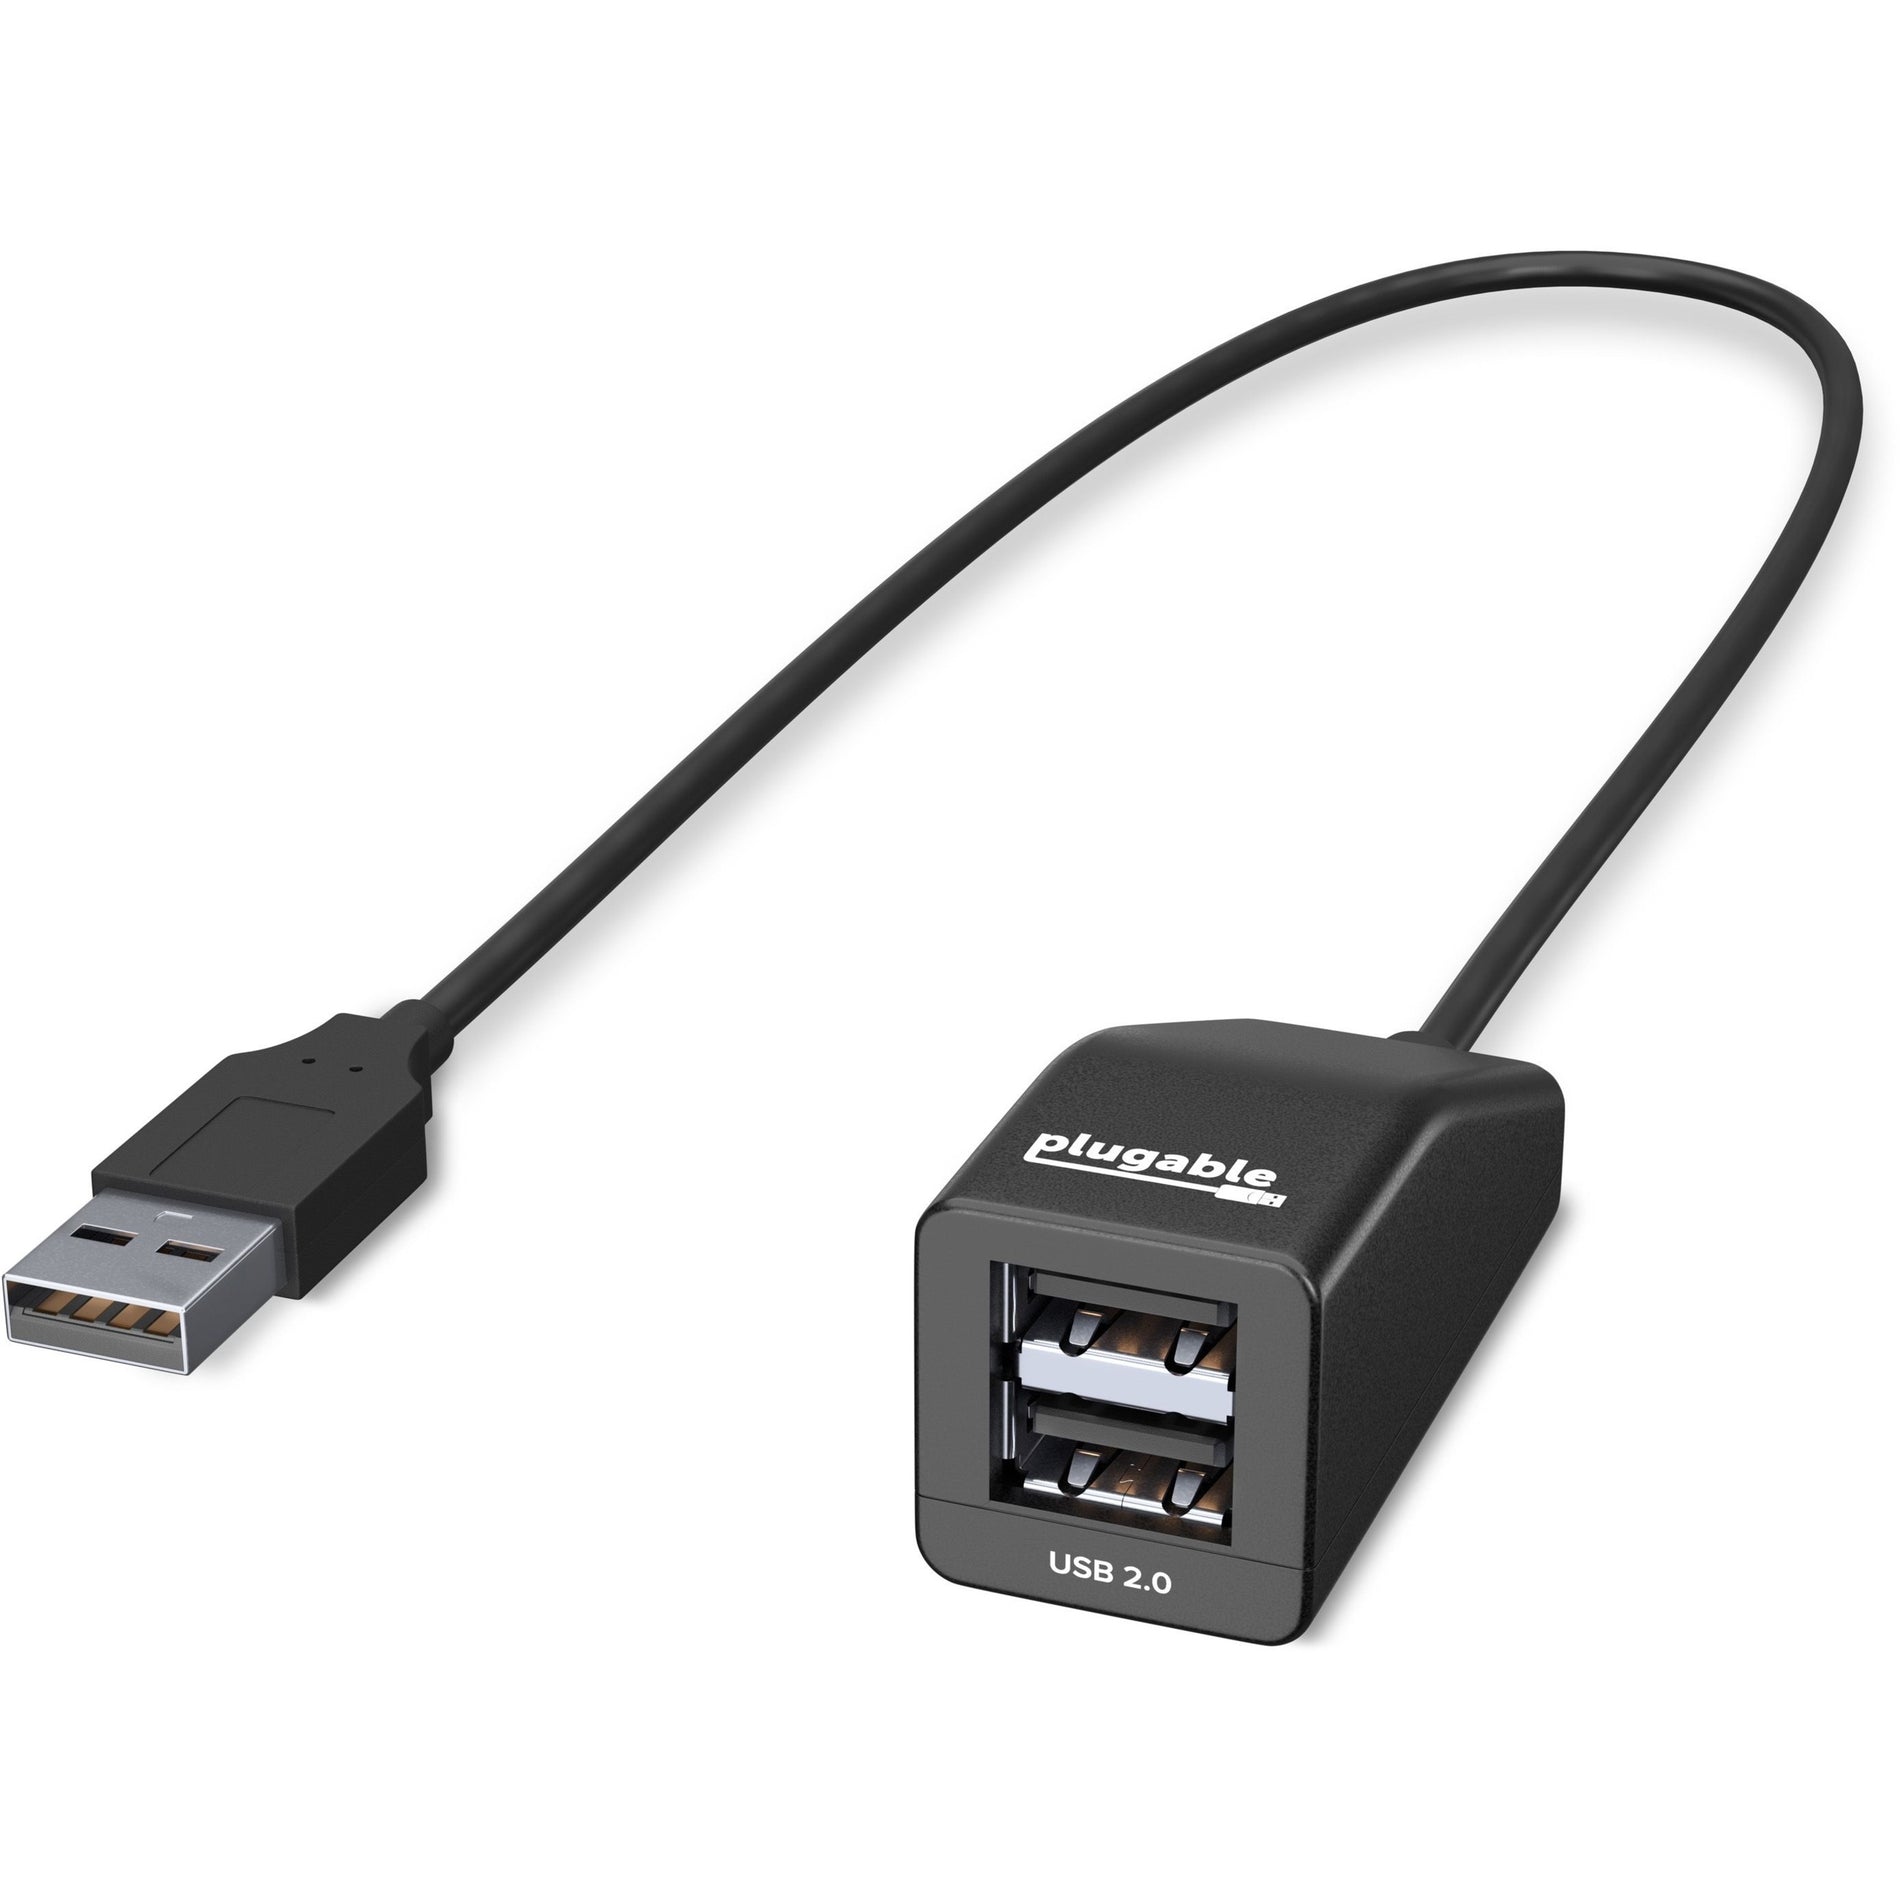 Hub compacto de alta velocidad Plugable USB2-2PORT USB 2.0 de 2 puertos fácil expansión para tus dispositivos